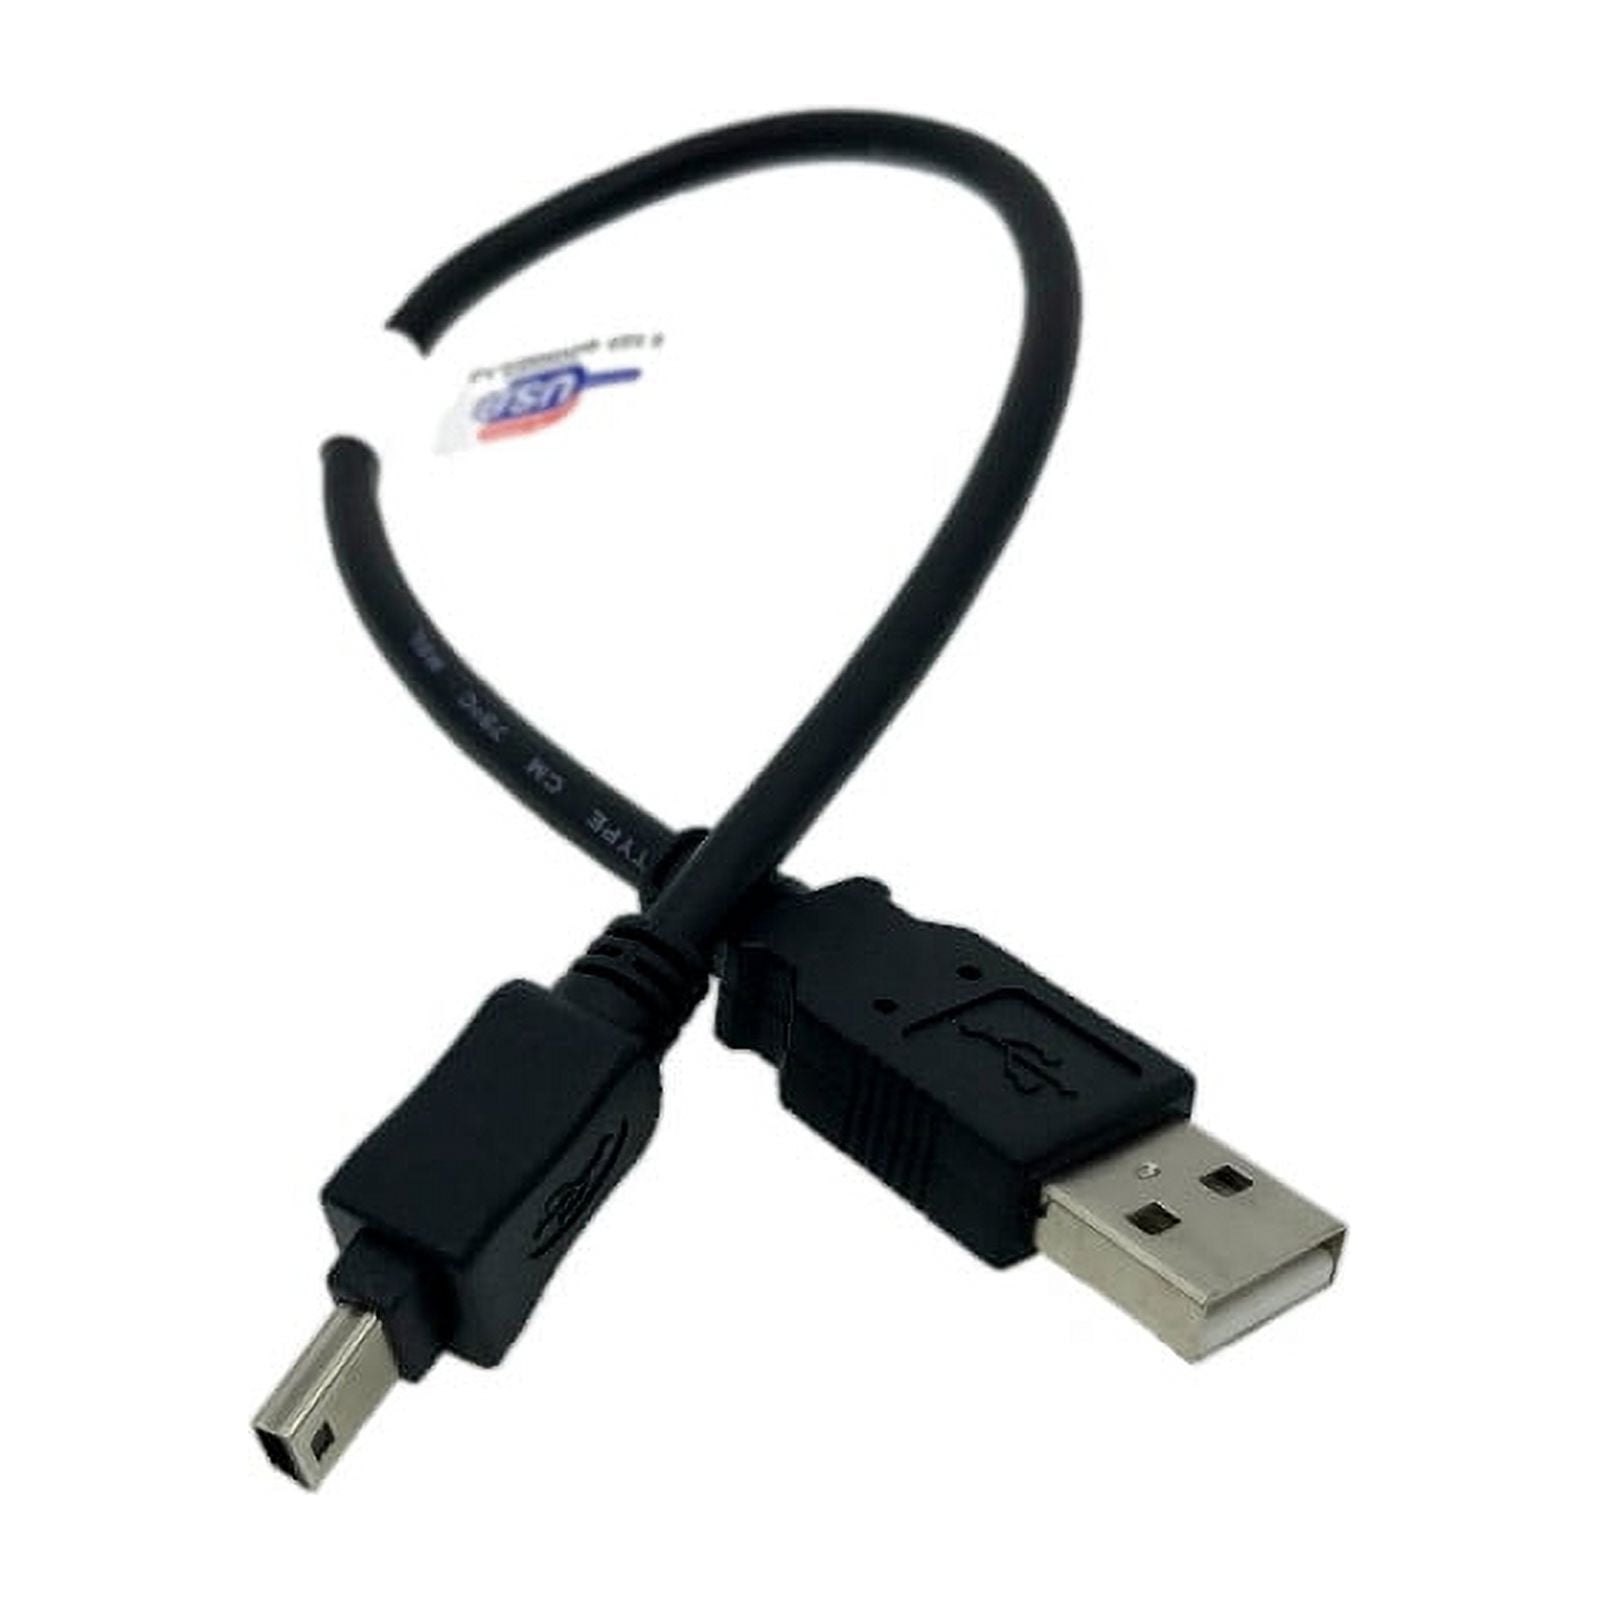 Câble mini-U.S.B. pour GARMIN 660, 795 et VIRB